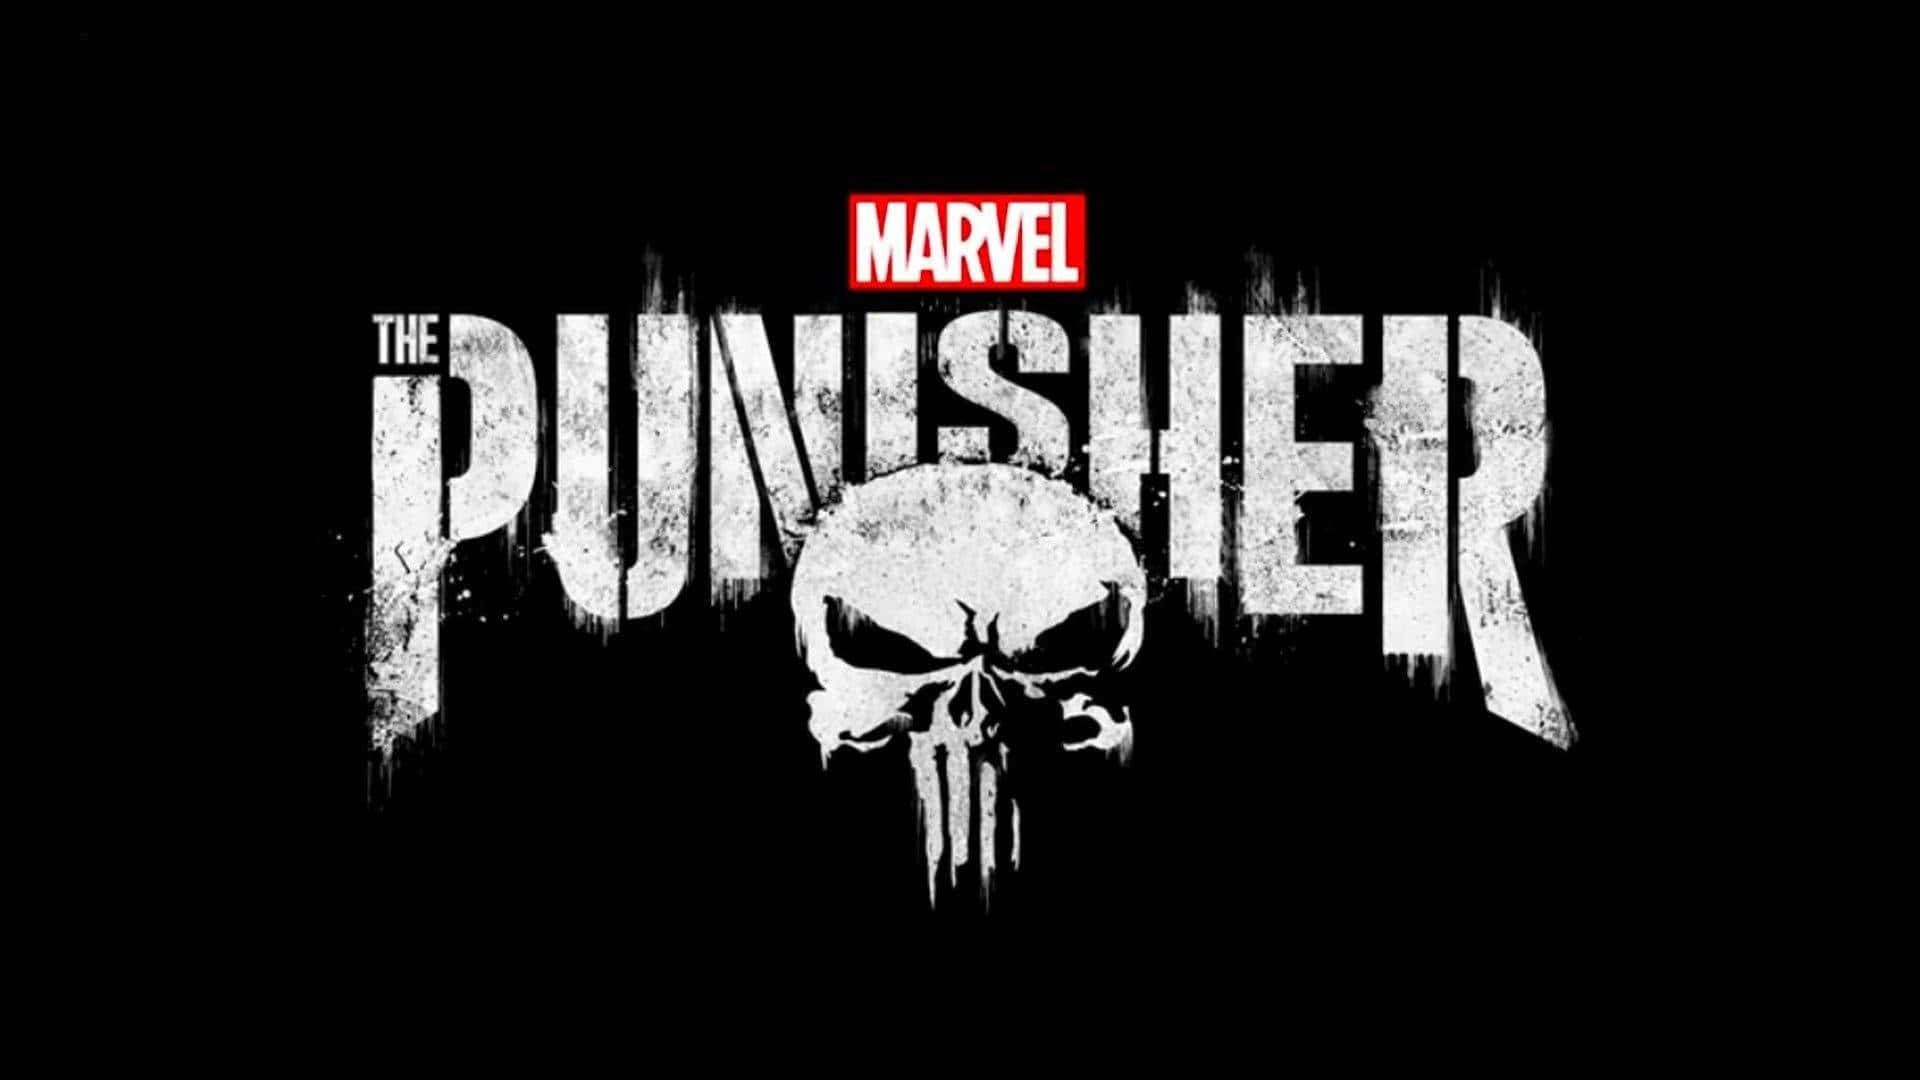 Marvel Black And White The Punisher Wallpaper